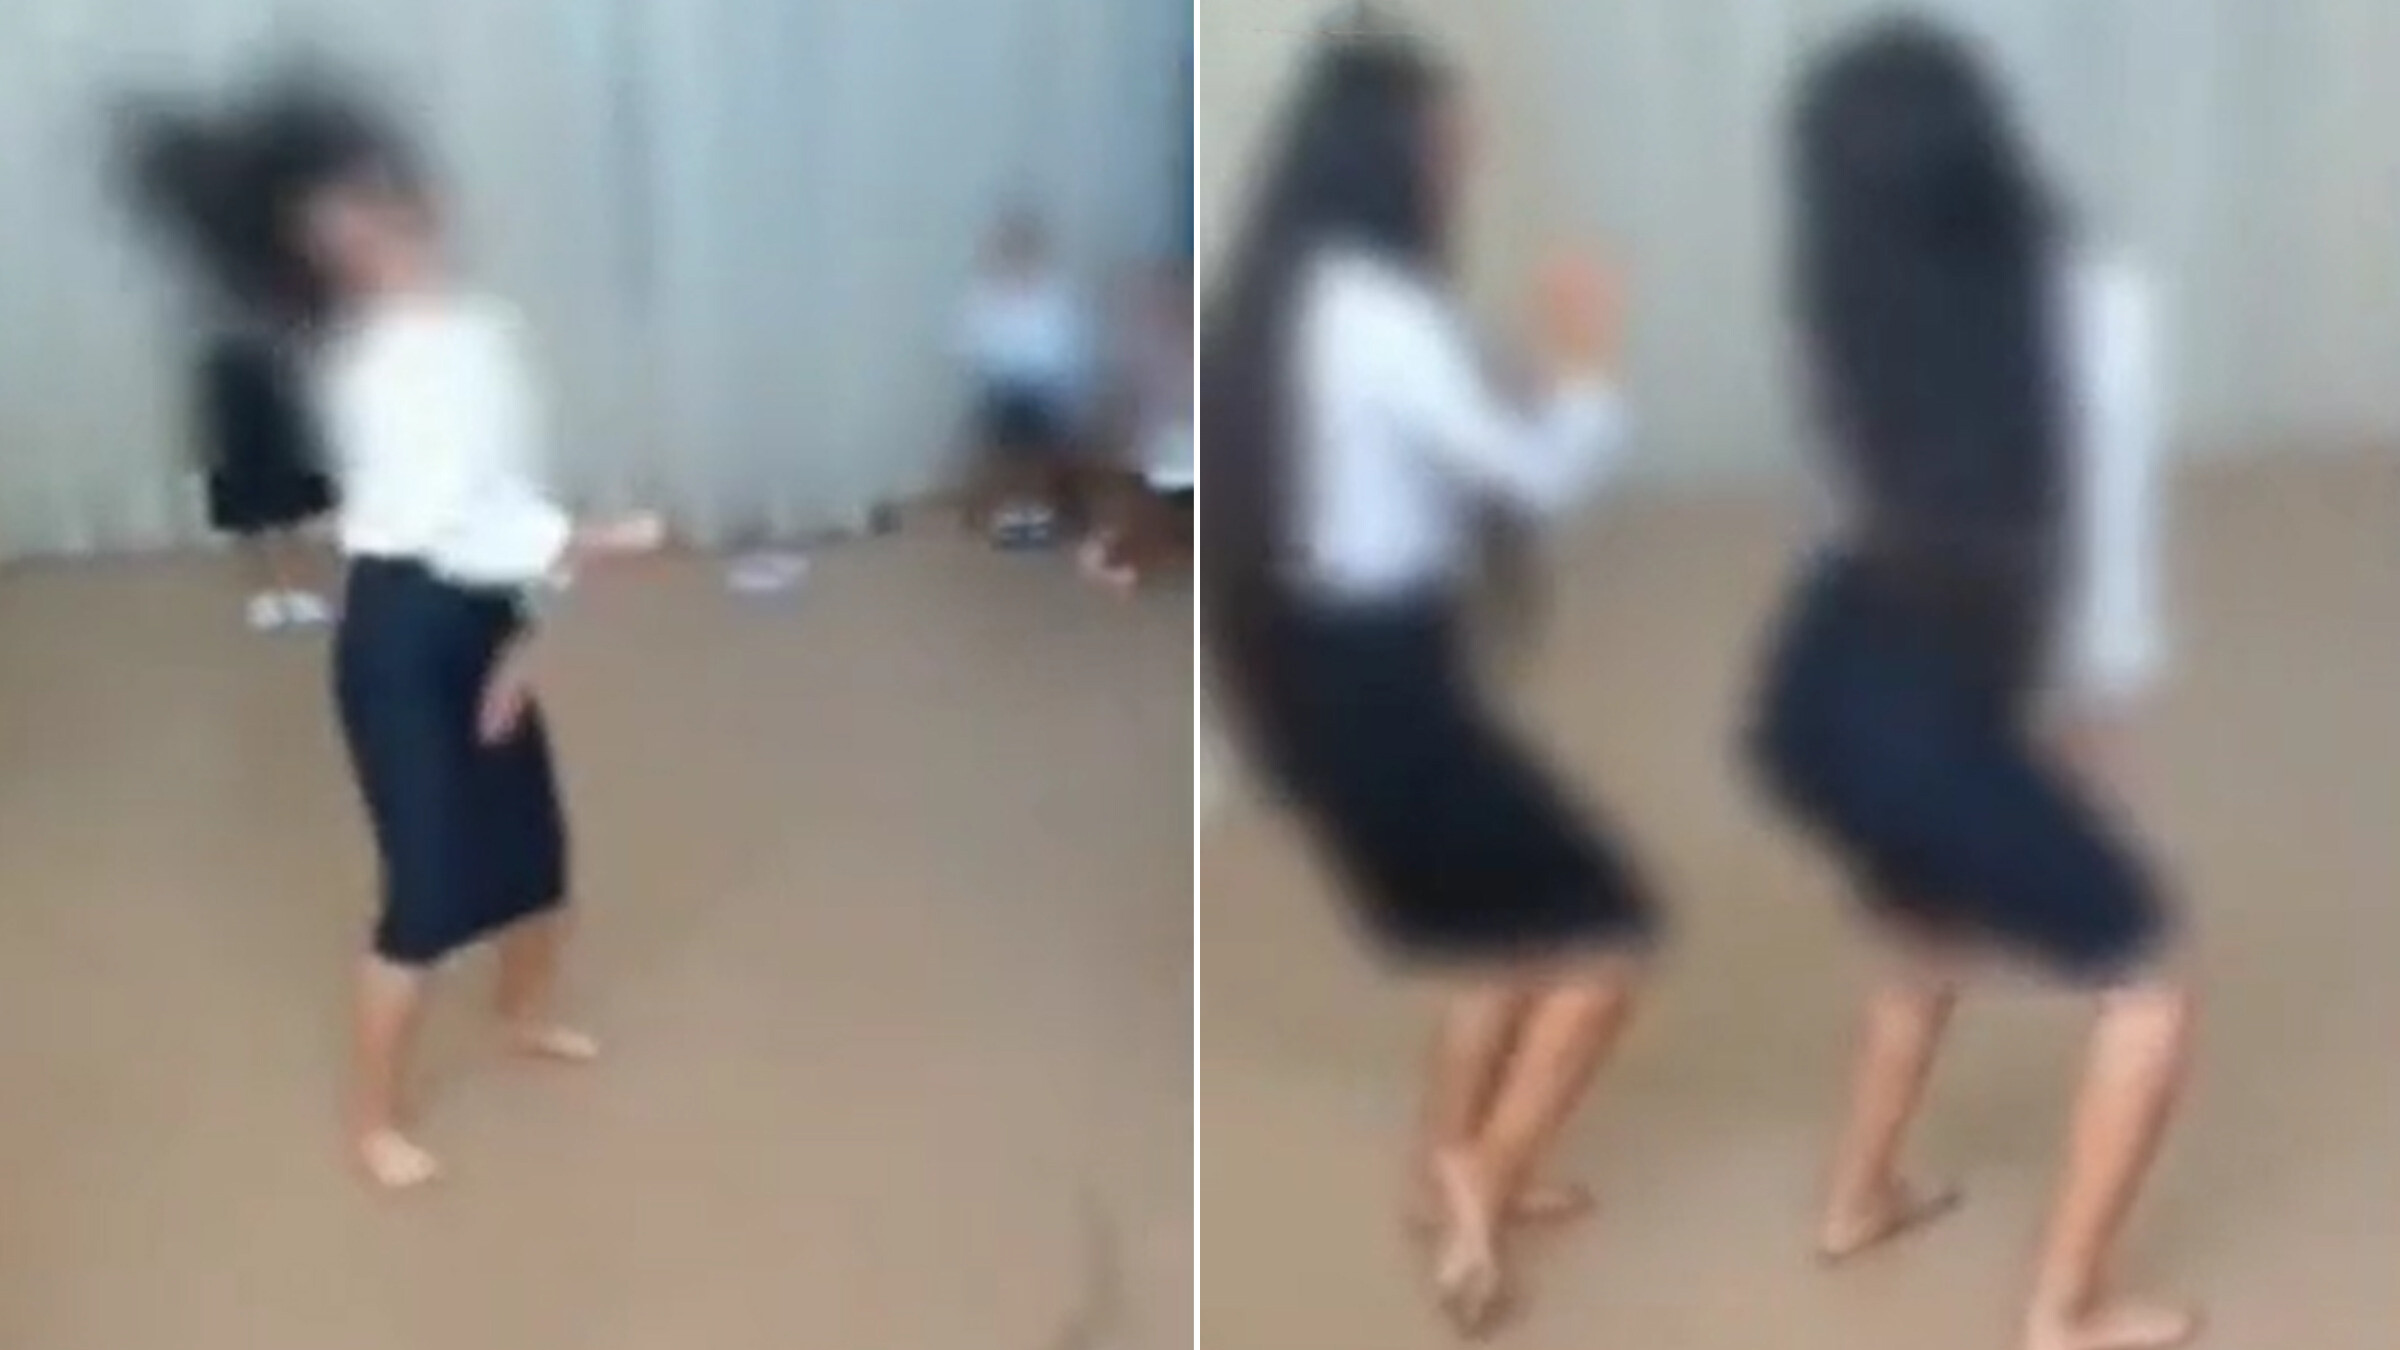 В Навои оштрафовали родителей учениц за «танец, чуждый узбекской культуре и традициям» — видео